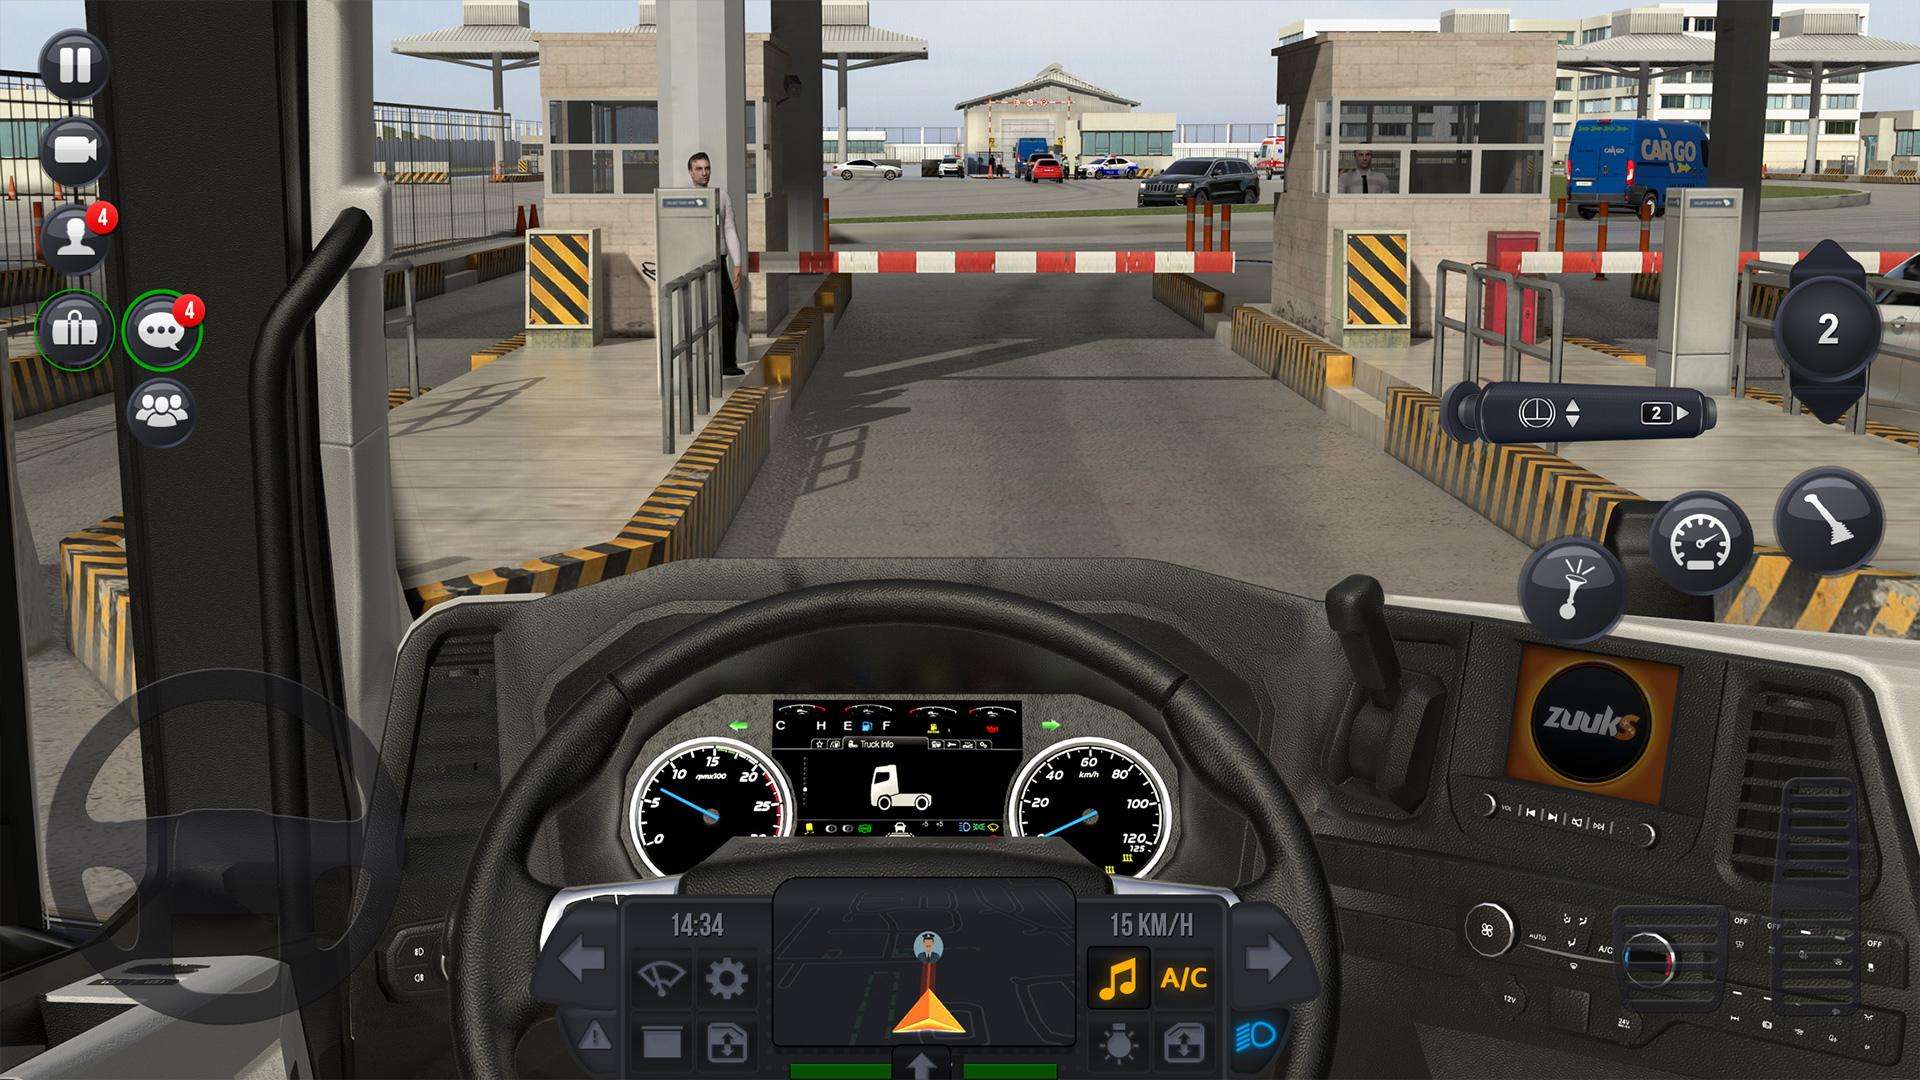 Машины truck simulator игра. Трак симулятор ультимейт1. Евро трак симулятор 1. Truck Simulator Ultimate на андроид. Трак симулятор ультимейт 2.